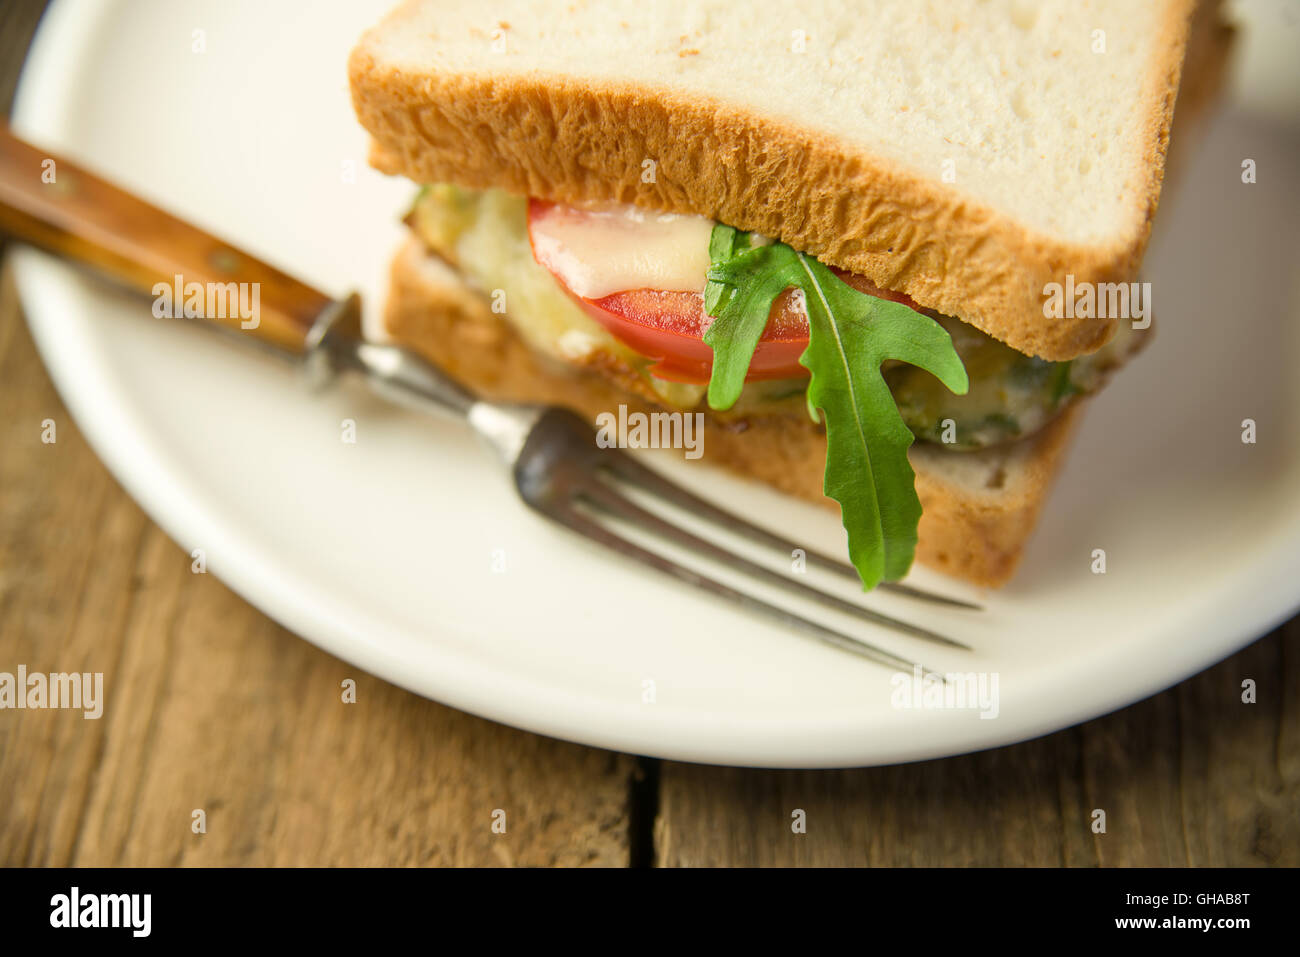 Sandwich avec des légumes sur une escalope et plaque blanche Banque D'Images